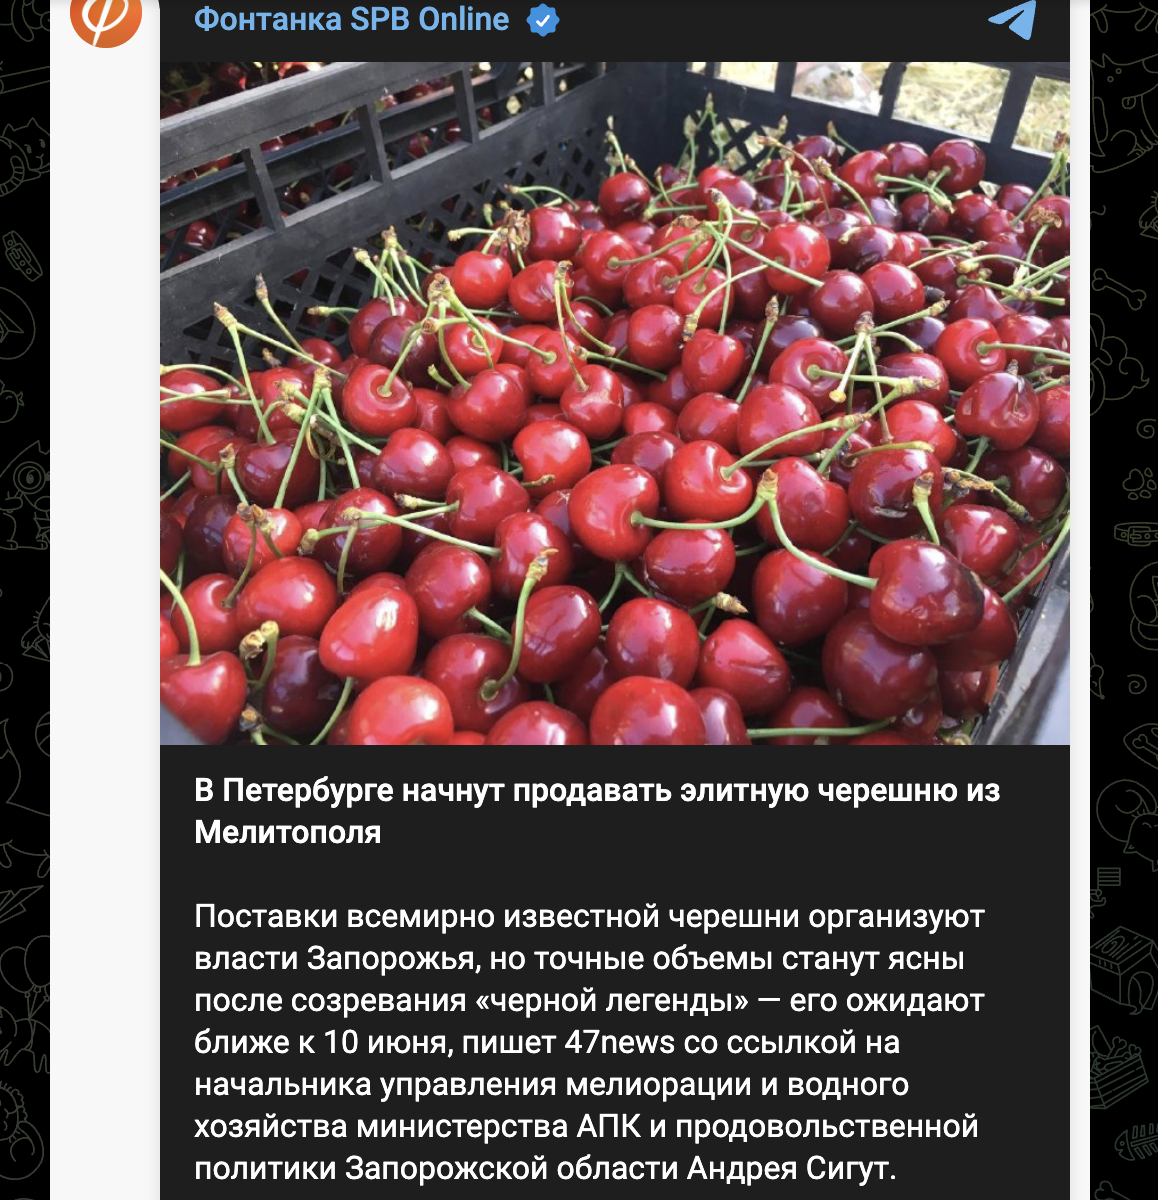 Les occupants vendront des cerises volées à Melitopol en Russie photo 1